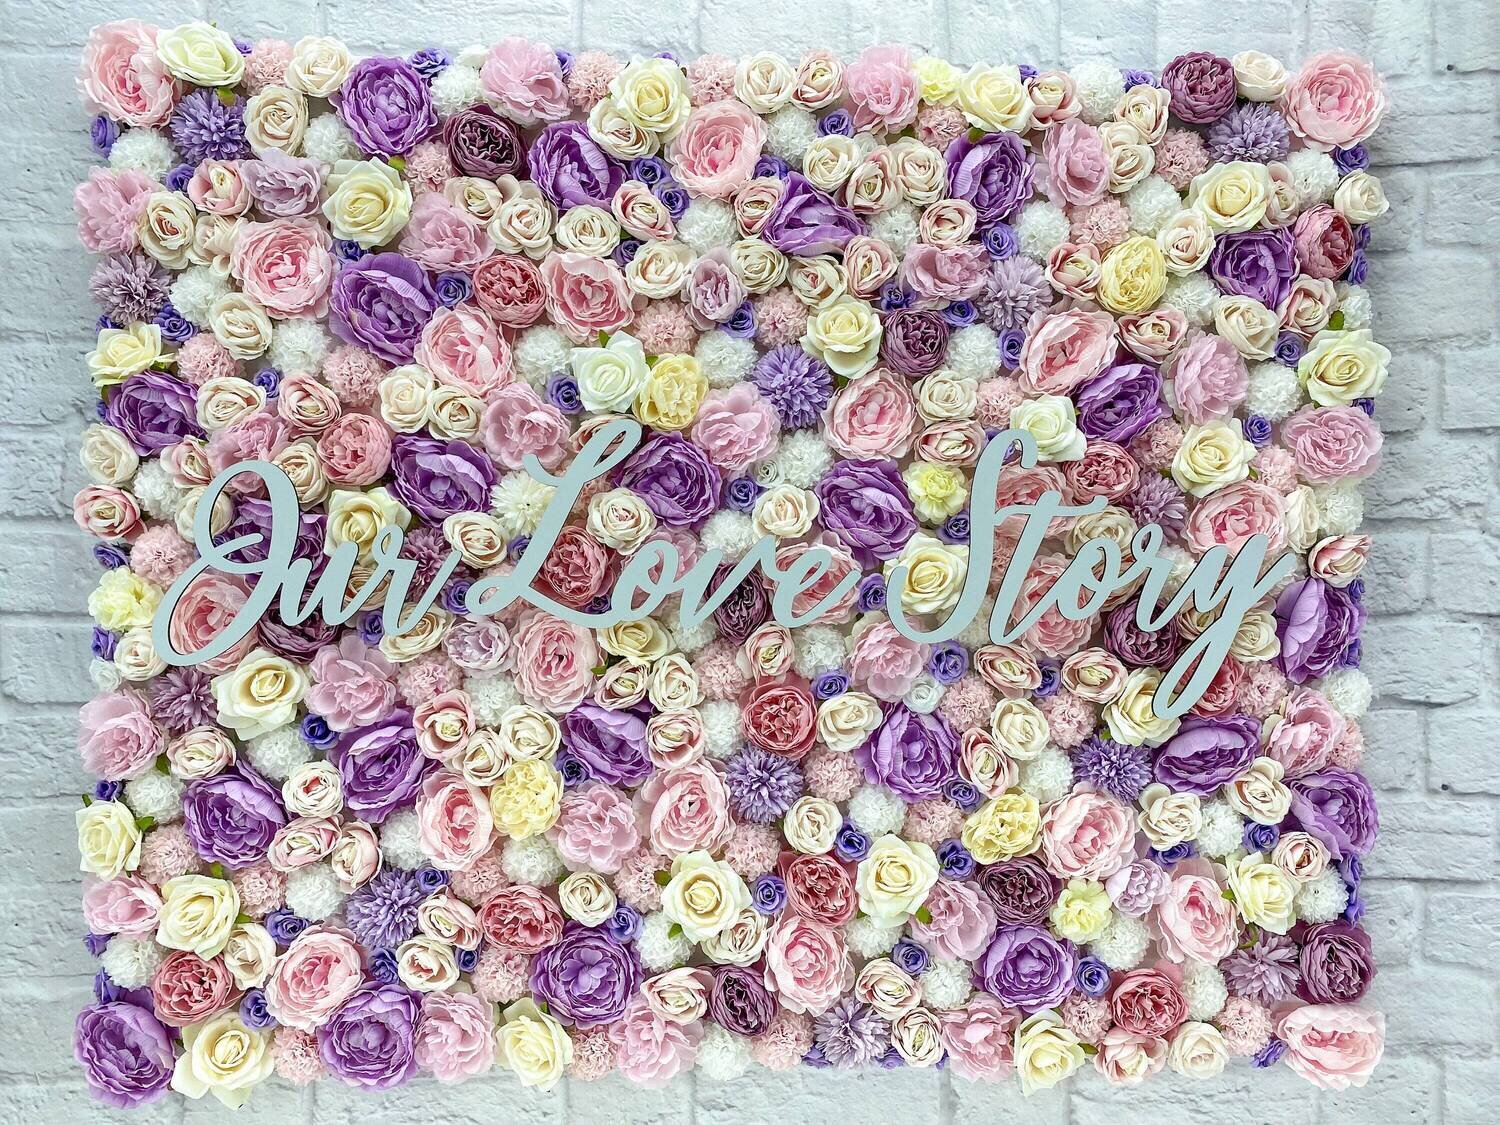 Blumenbild Hochzeit Dekoration, Blumenwand mit künstlichen Blumen